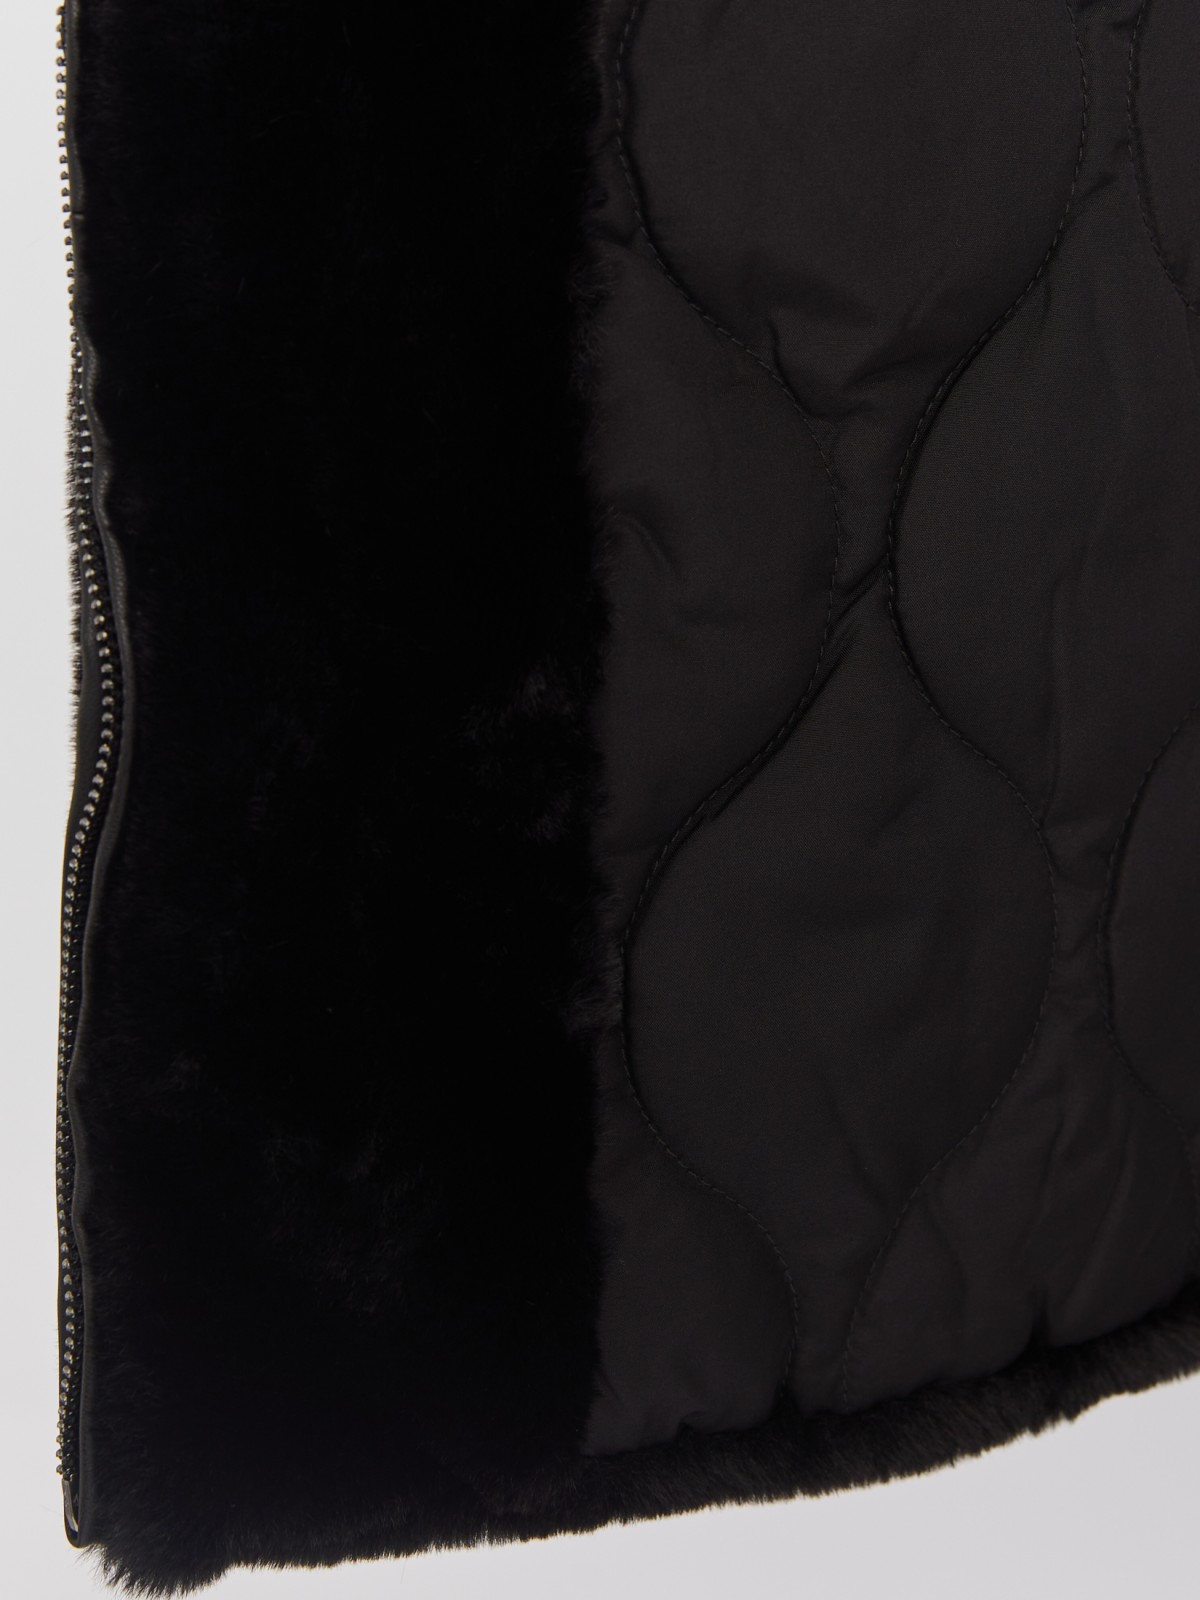 Тёплая куртка-шуба из искусственного меха на синтепоне с регулируемой талией zolla 023335550104, цвет черный, размер S - фото 5